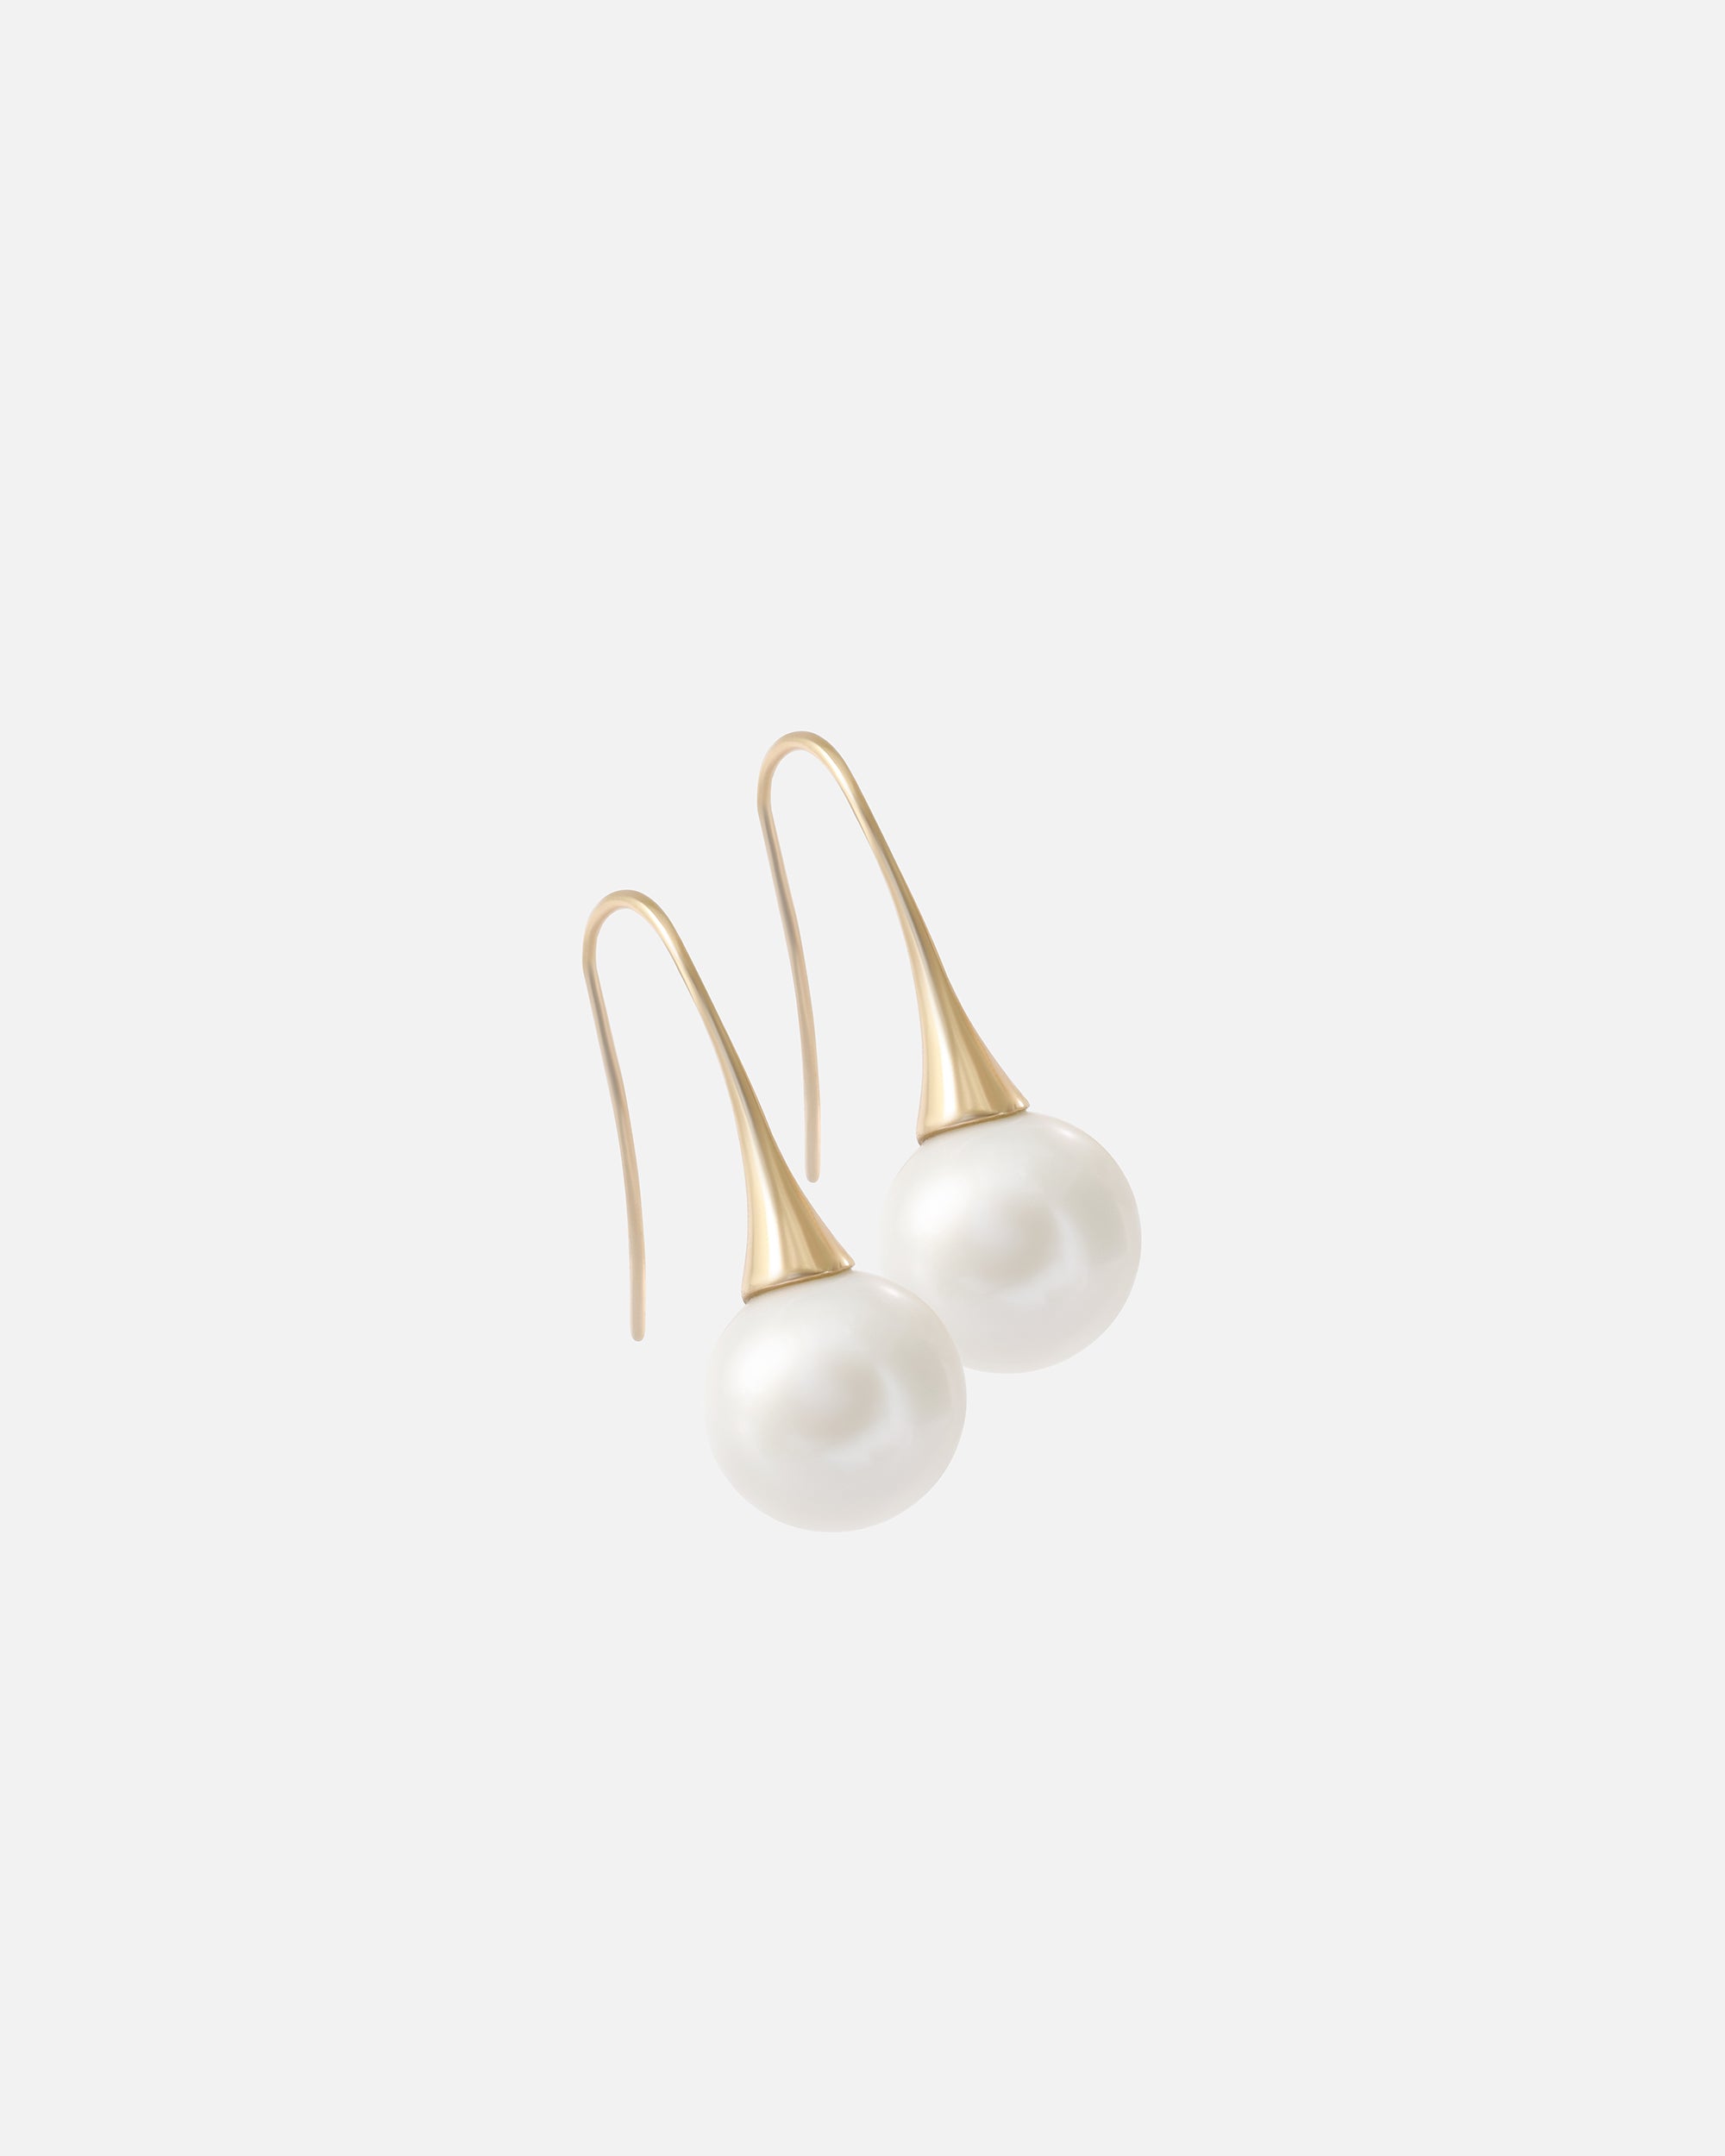 WeiWave / Solo Round Pearl Earrings By Ruowei in earrings Category